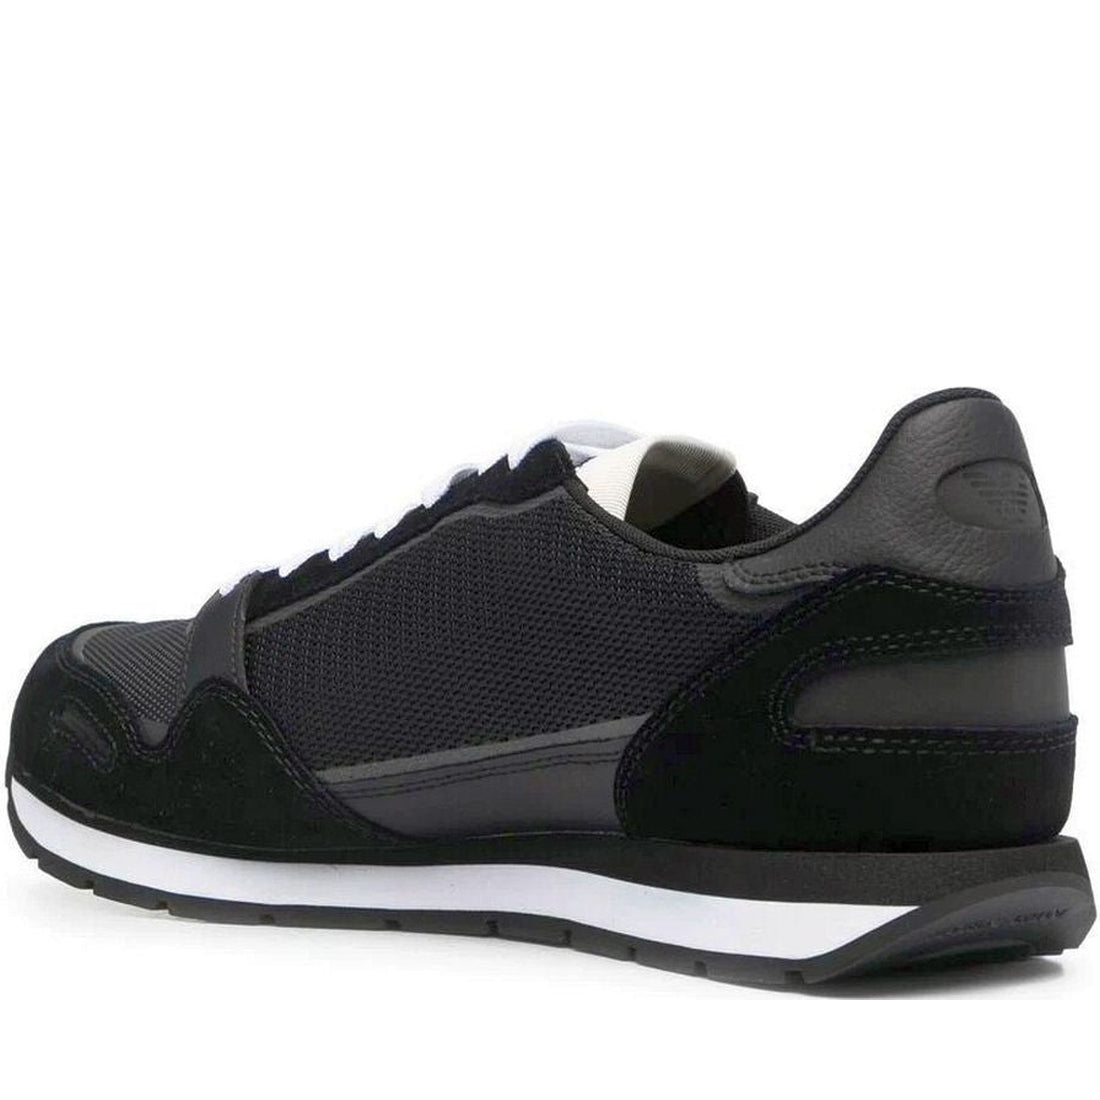 Emporio Armani mens black casual sneaker | Vilbury London